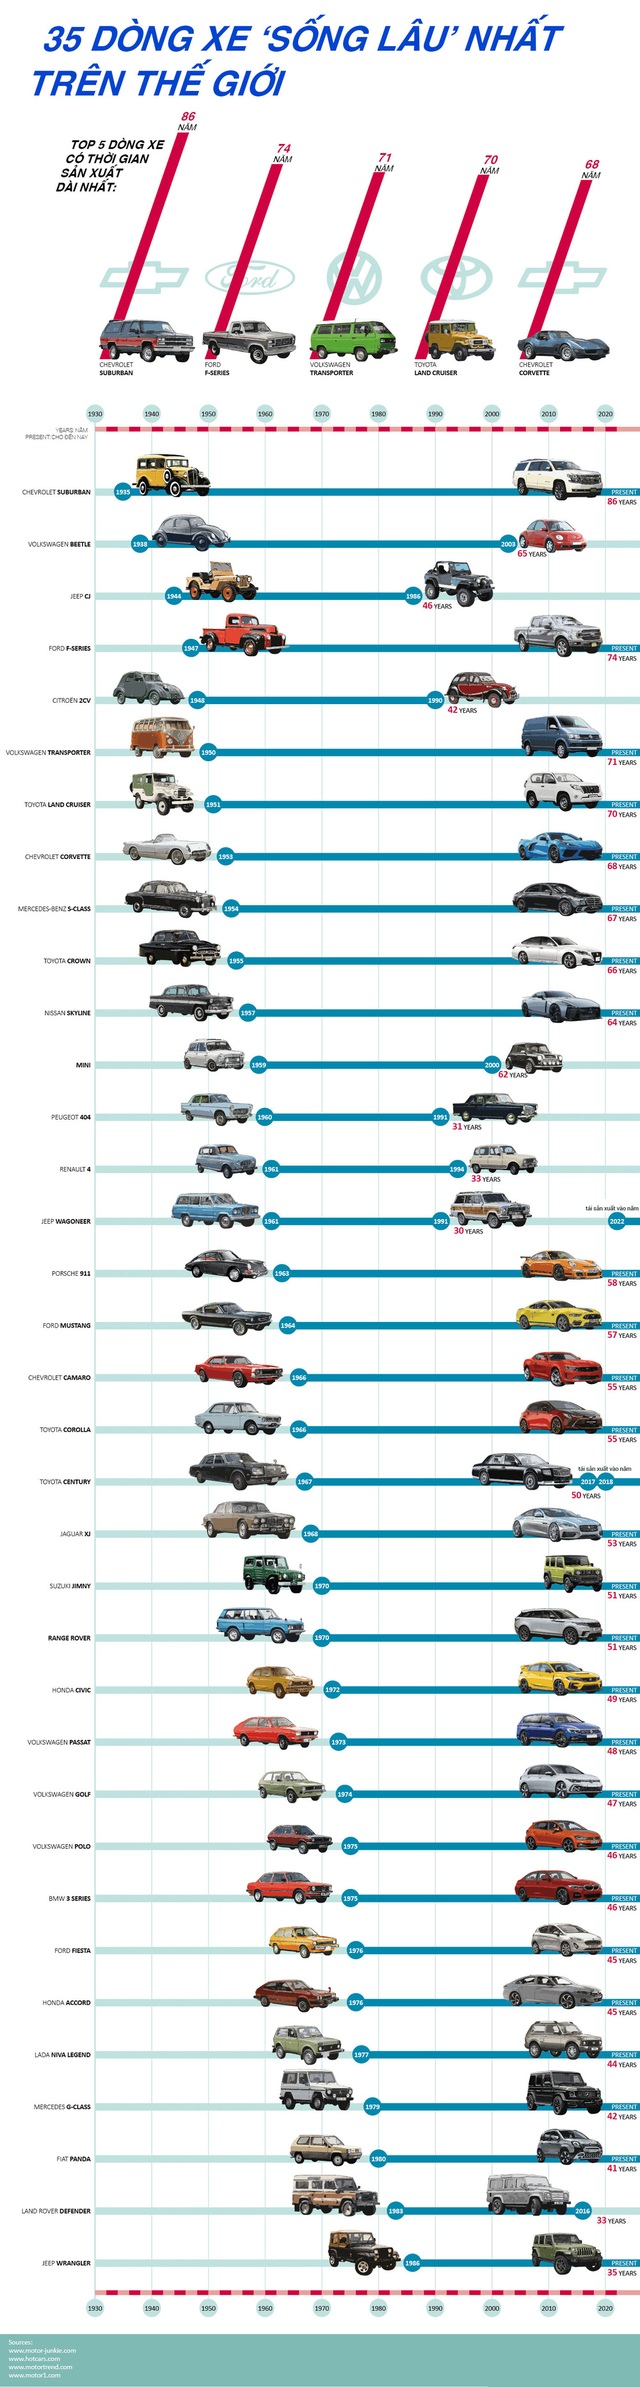 35 xe ô tô sống lâu nhất thế giới - Ảnh 1.